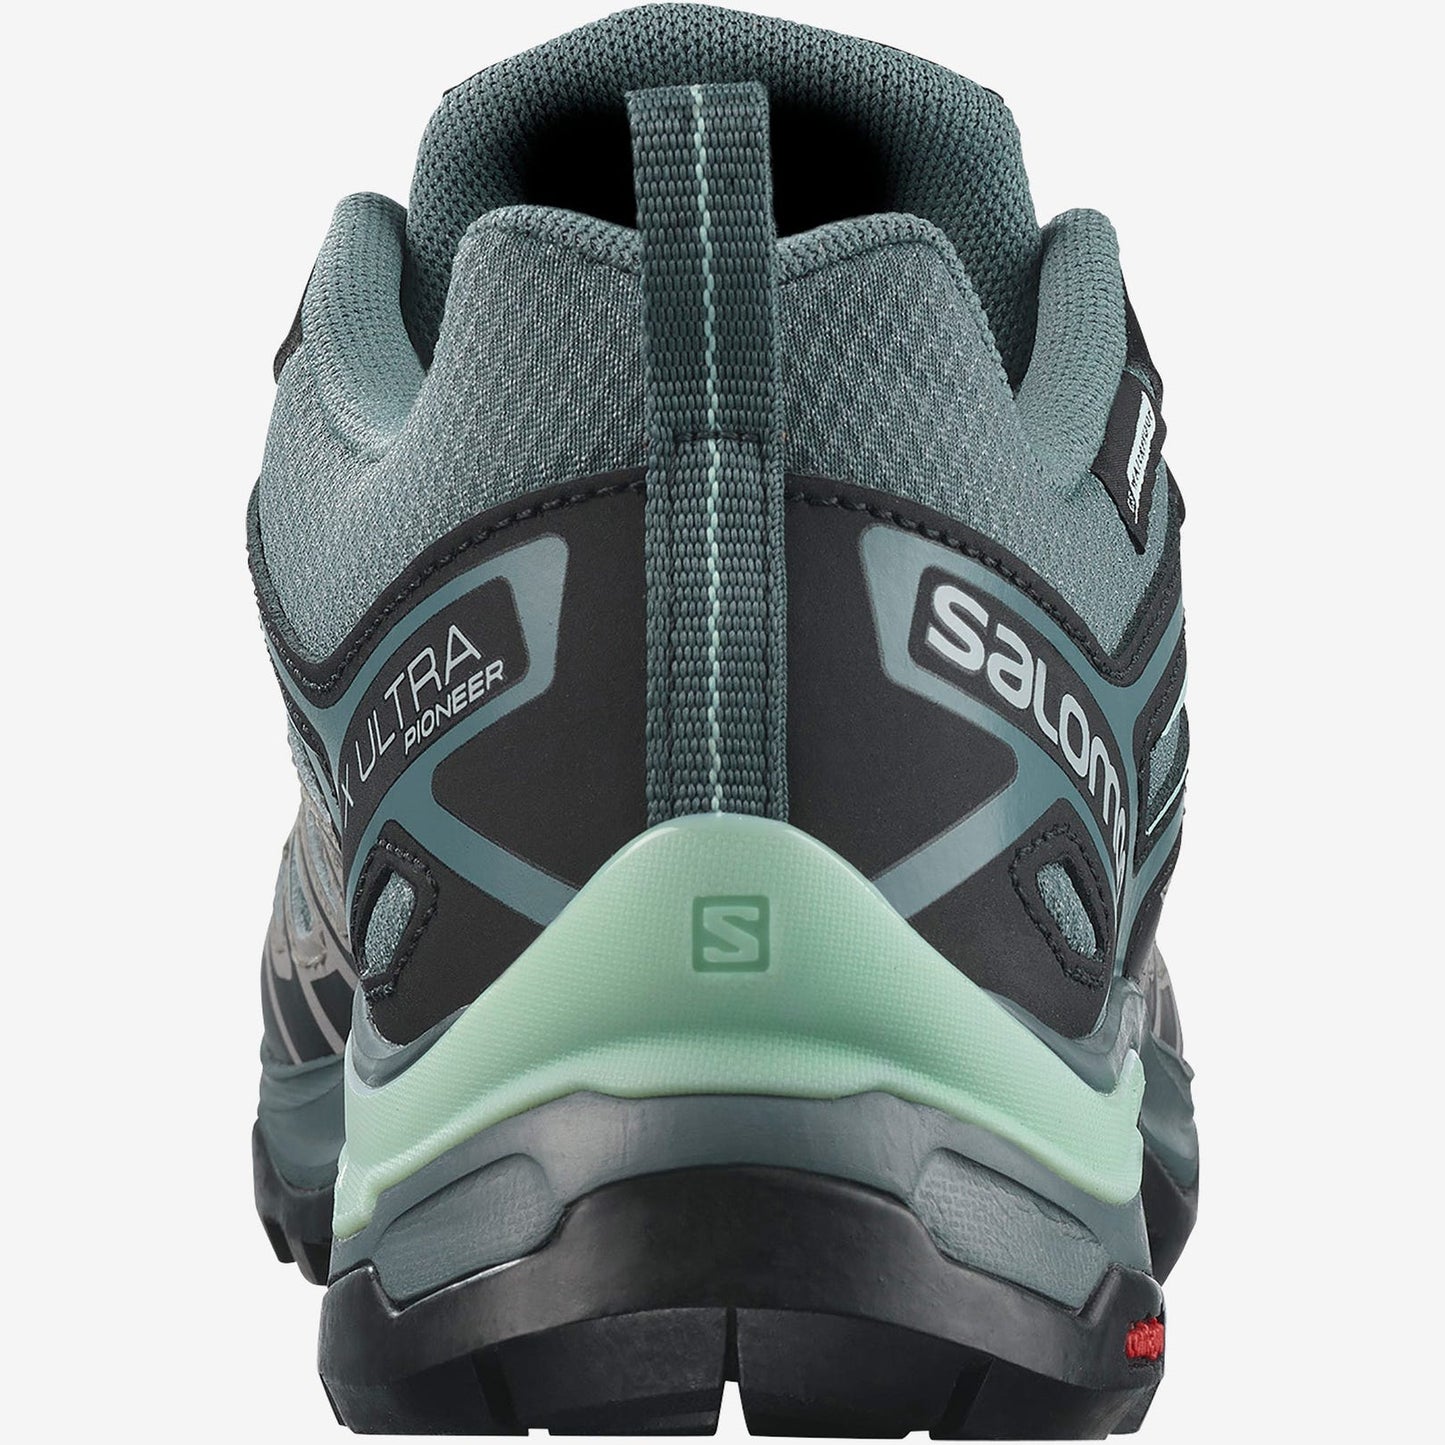 Salomon Women's X Ultra Pioneer Climasalomon Waterproof Hiking Shoes